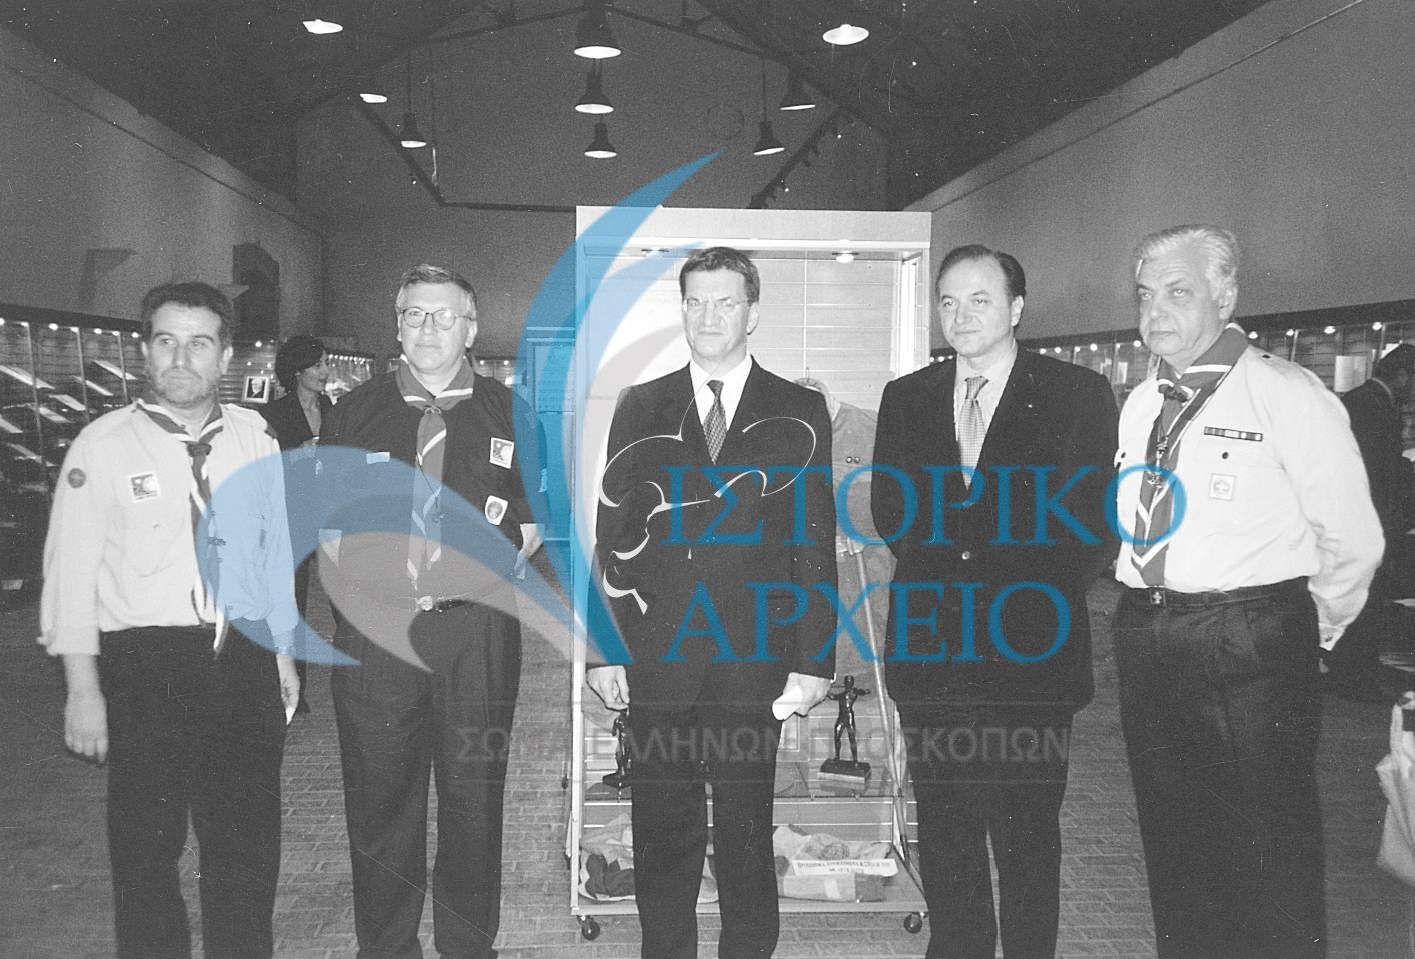 Ο Υπουργός Εθνικής Παιδείας & Θρησκευμάτων Π. Ευθυμίου με τον Πρόεδρο ΣΕΠ Γ. Ασημακόπουλο τον ΓΕ Χ. Βογιατζή και τον Χρ. Σταθόπουλο στην έκθεση ενθυμημάτων από την ιστορία του ελληνικού προσκοπισμού που έγινε στην εκδήλωση "Προσκοπικά Δρώμενα" το 2000 στην Αθήνα, με την ευκαιρία εορτασμού των 90 χρόνων του ΣΕΠ.